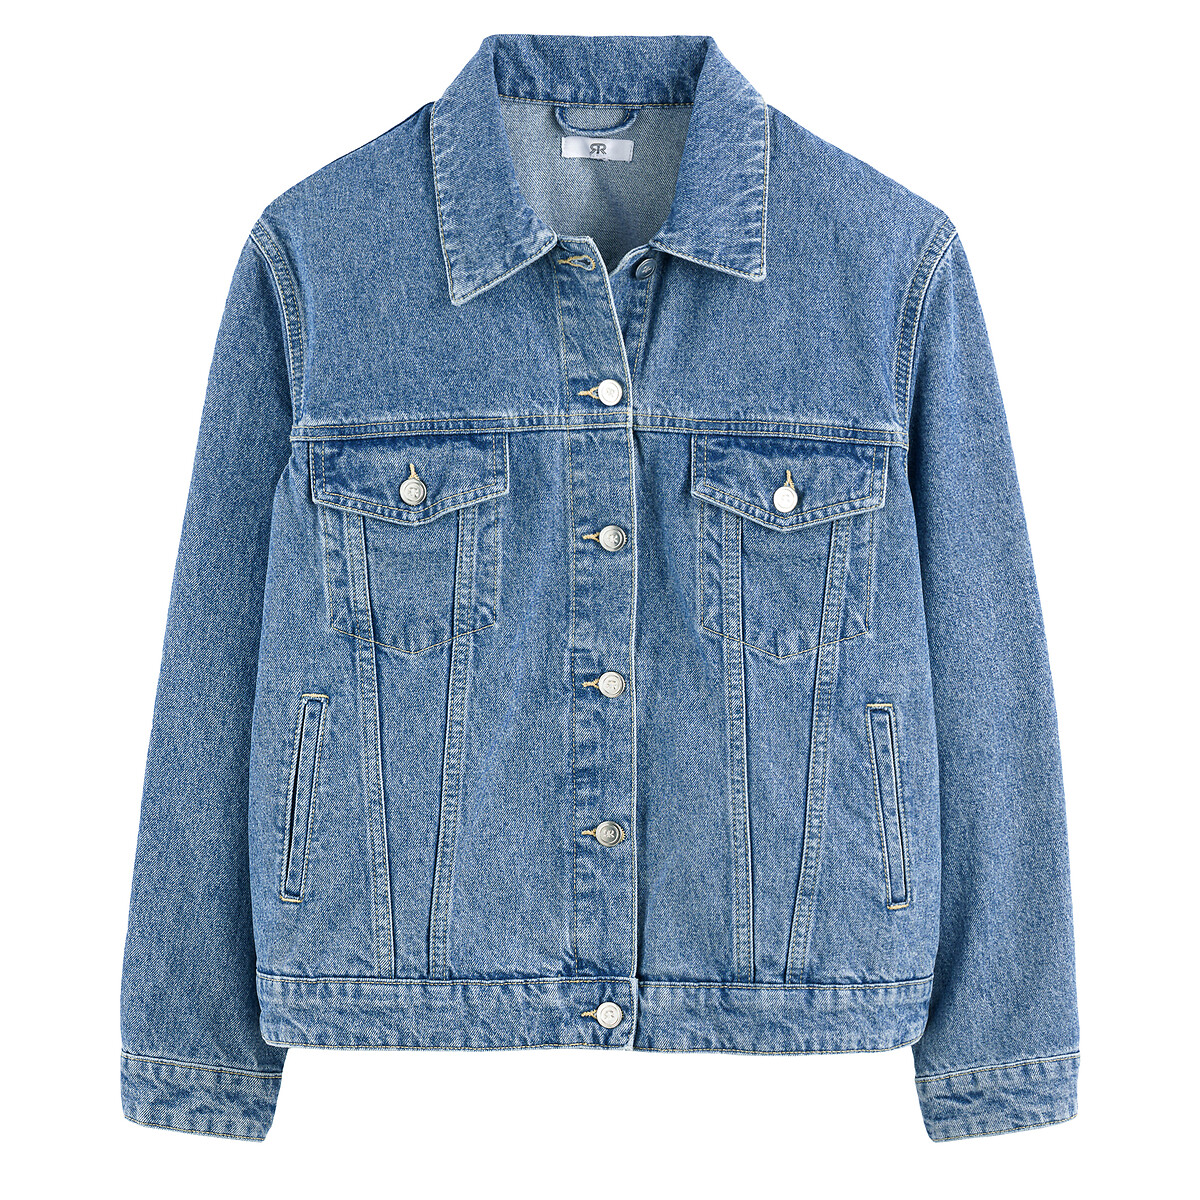 Куртка Из джинсовой ткани широкого покроя 36 (FR) - 42 (RUS) синий LaRedoute, размер 36 (FR) - 42 (RUS) Куртка Из джинсовой ткани широкого покроя 36 (FR) - 42 (RUS) синий - фото 5